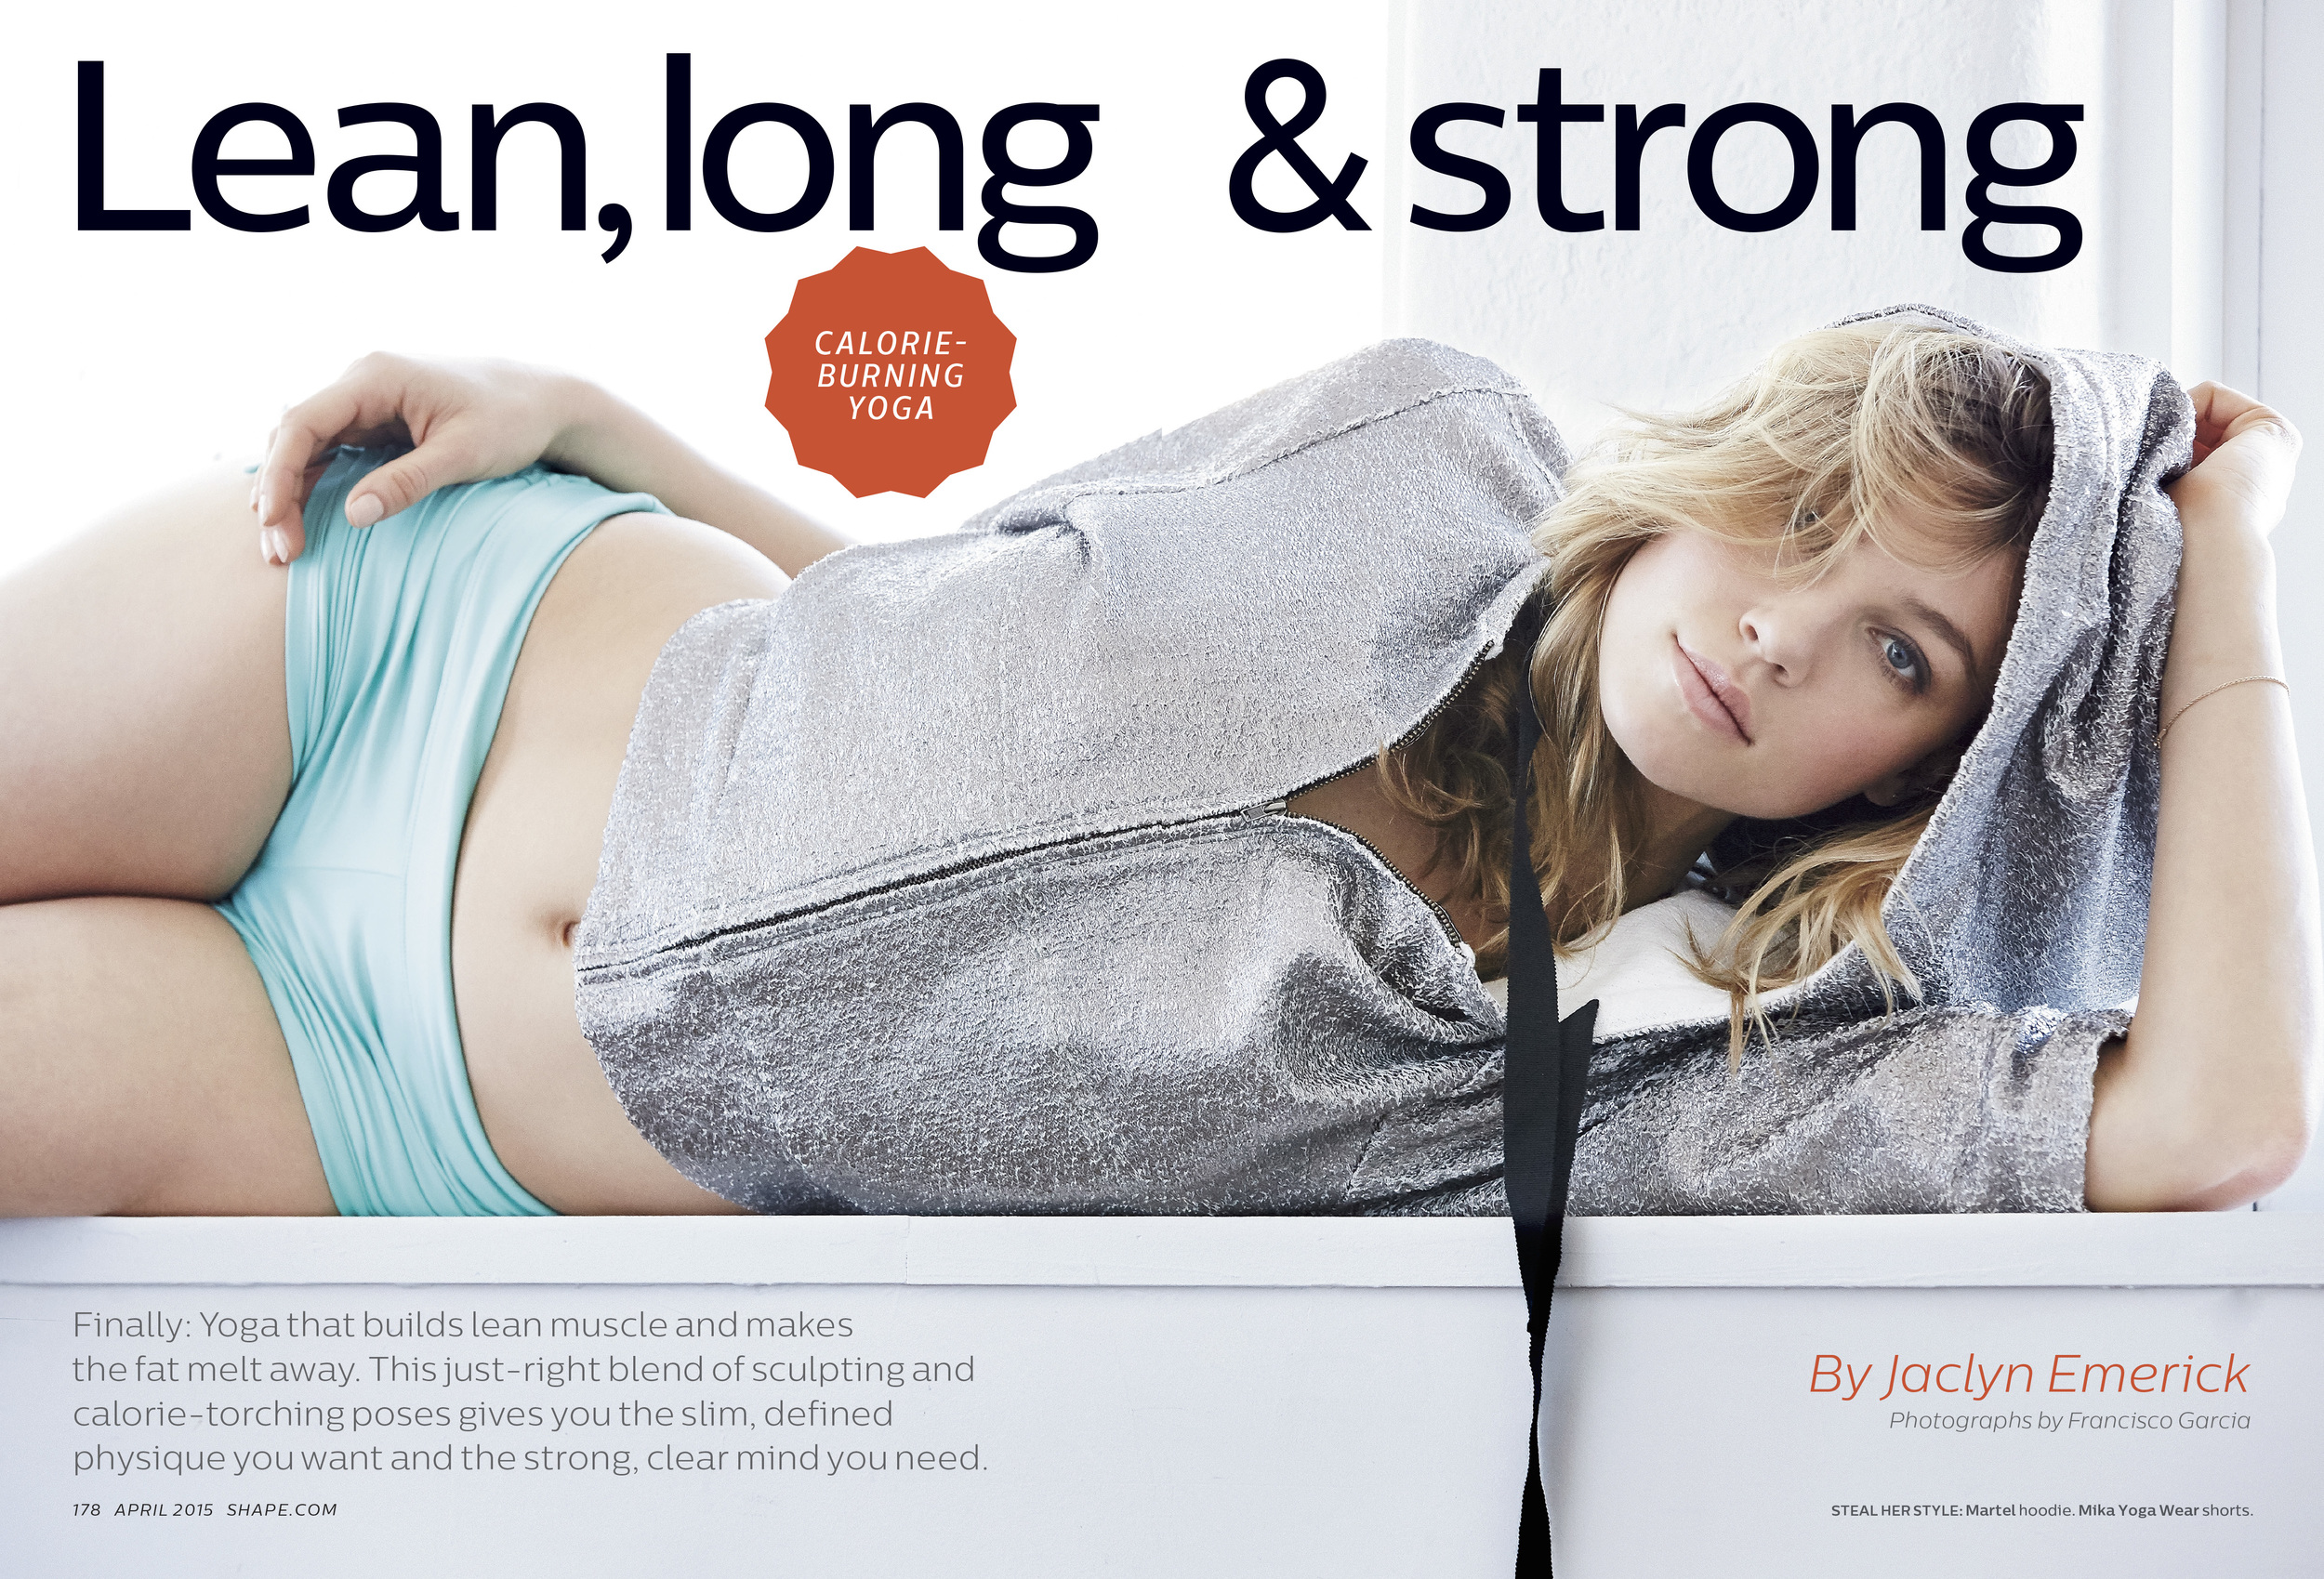 Lean, long & strong, April 2015